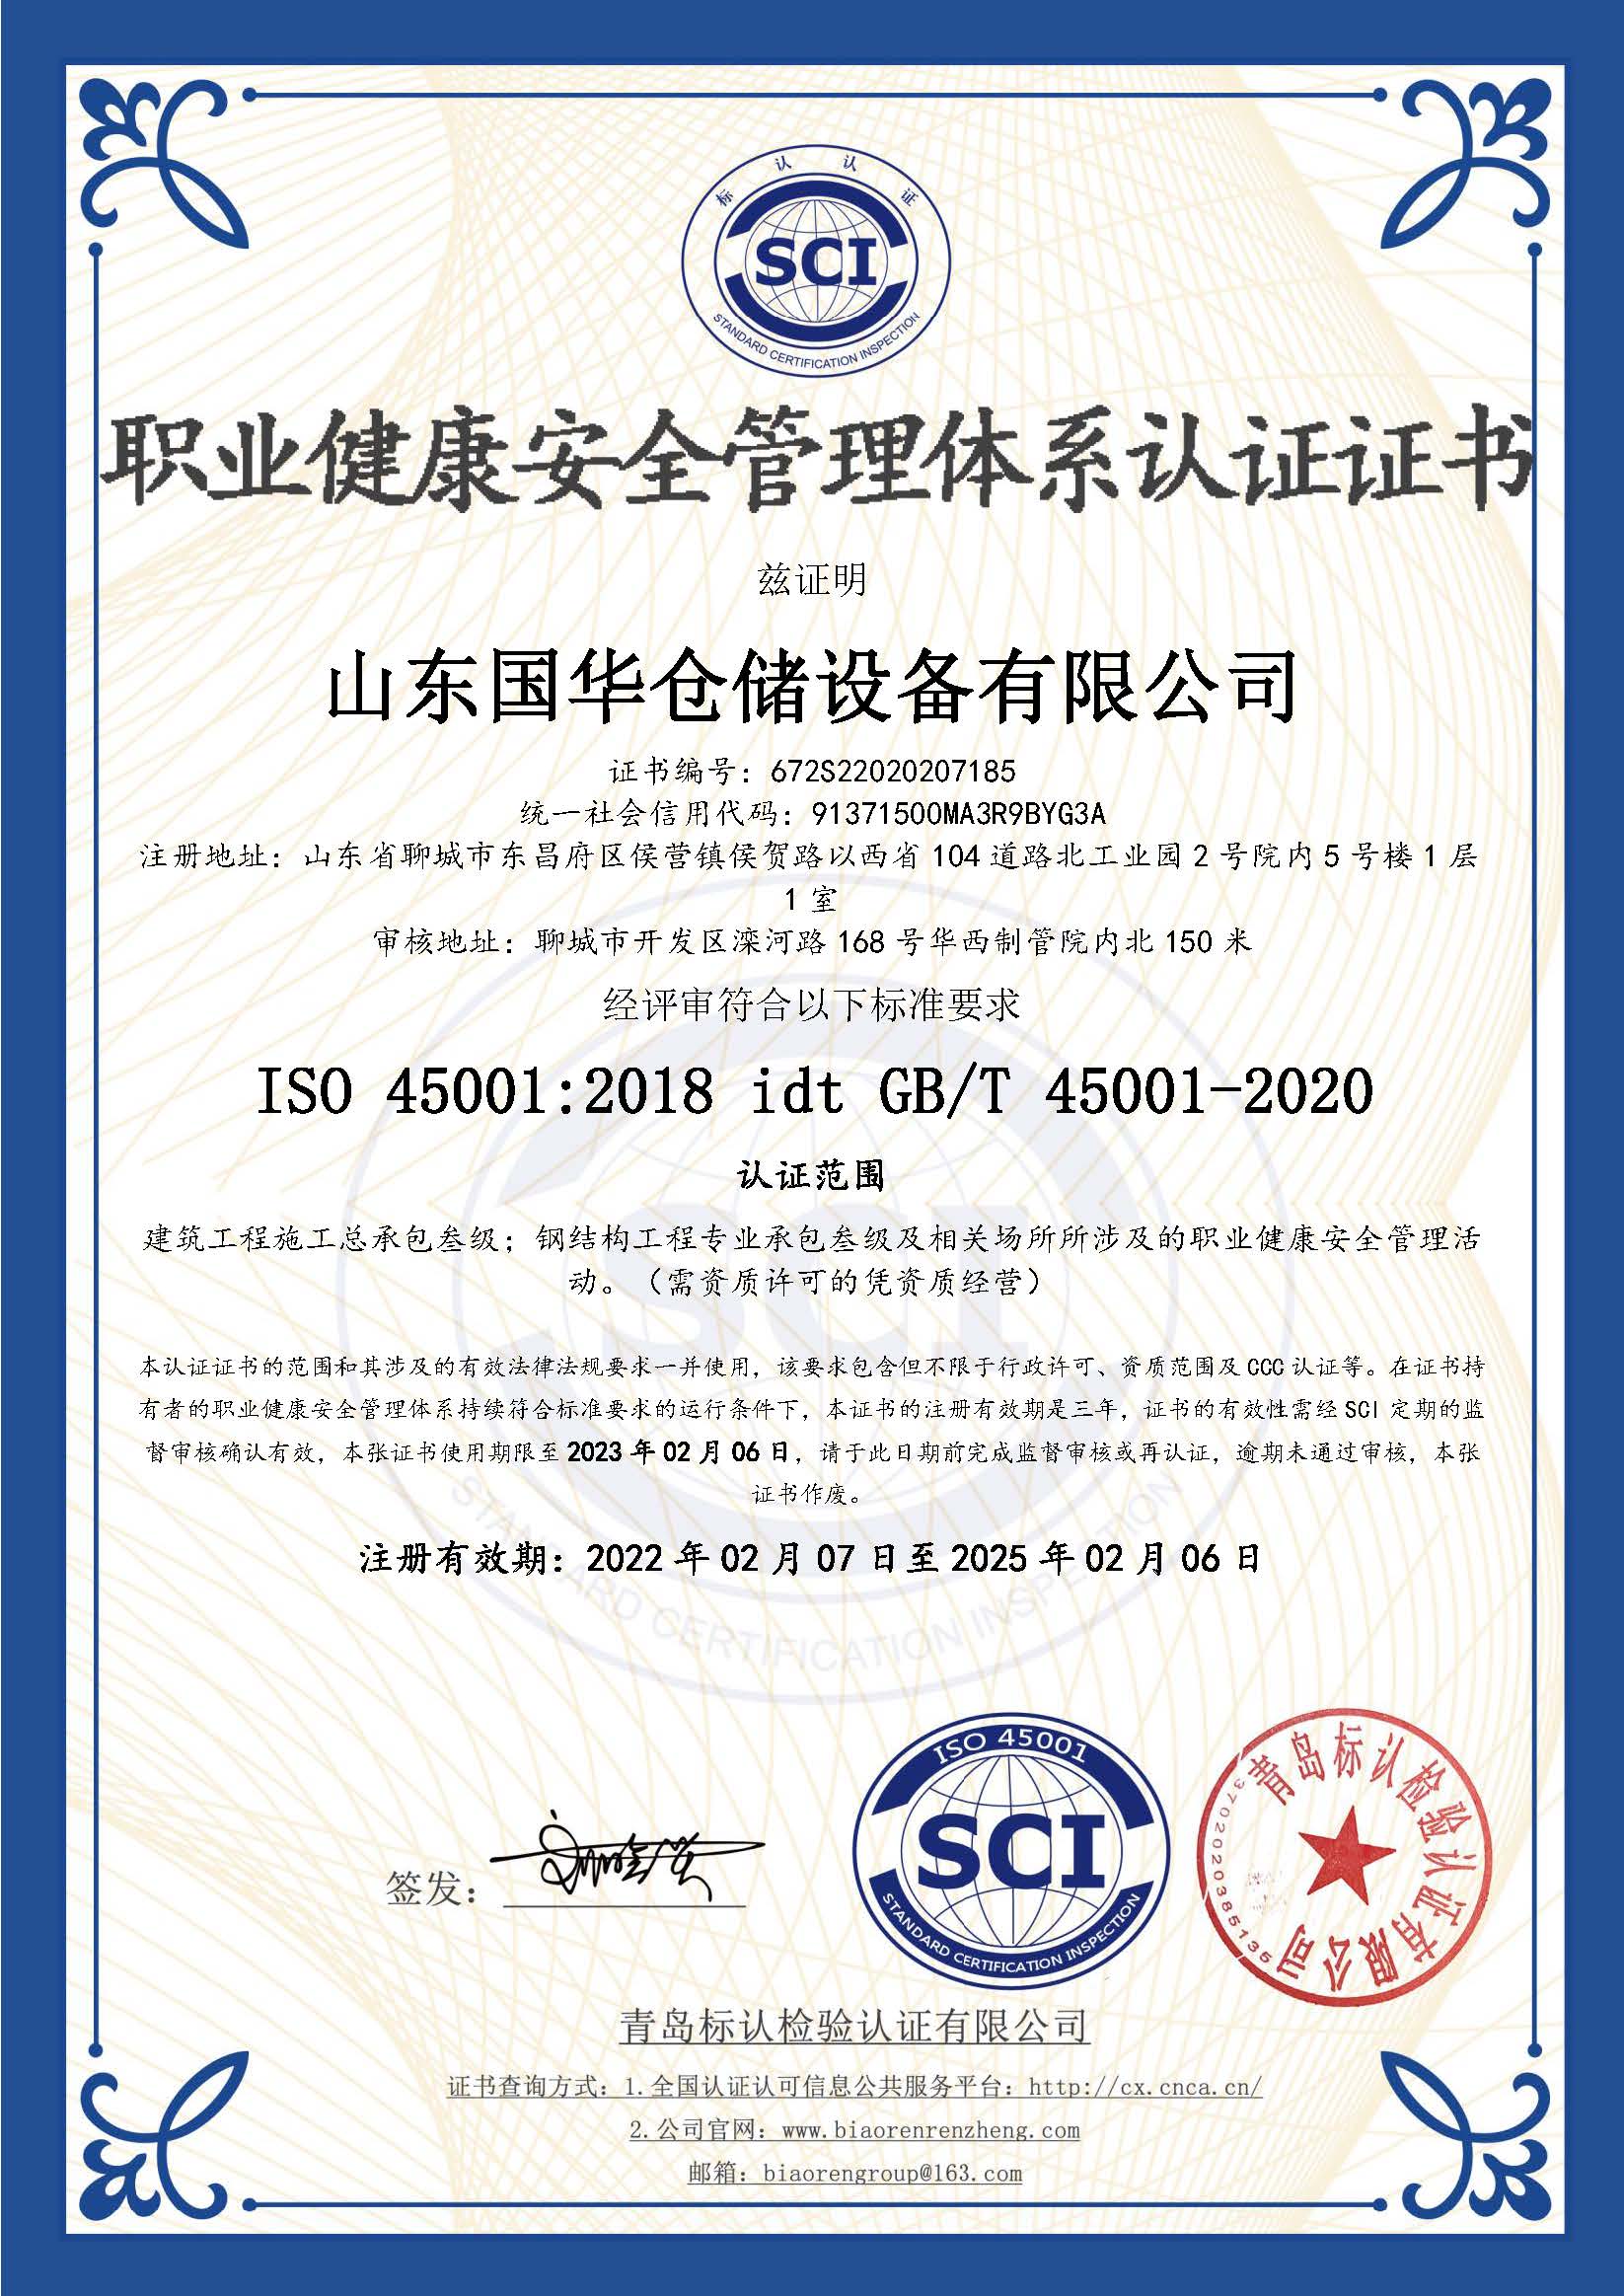 荆州钢板仓职业健康安全管理体系认证证书